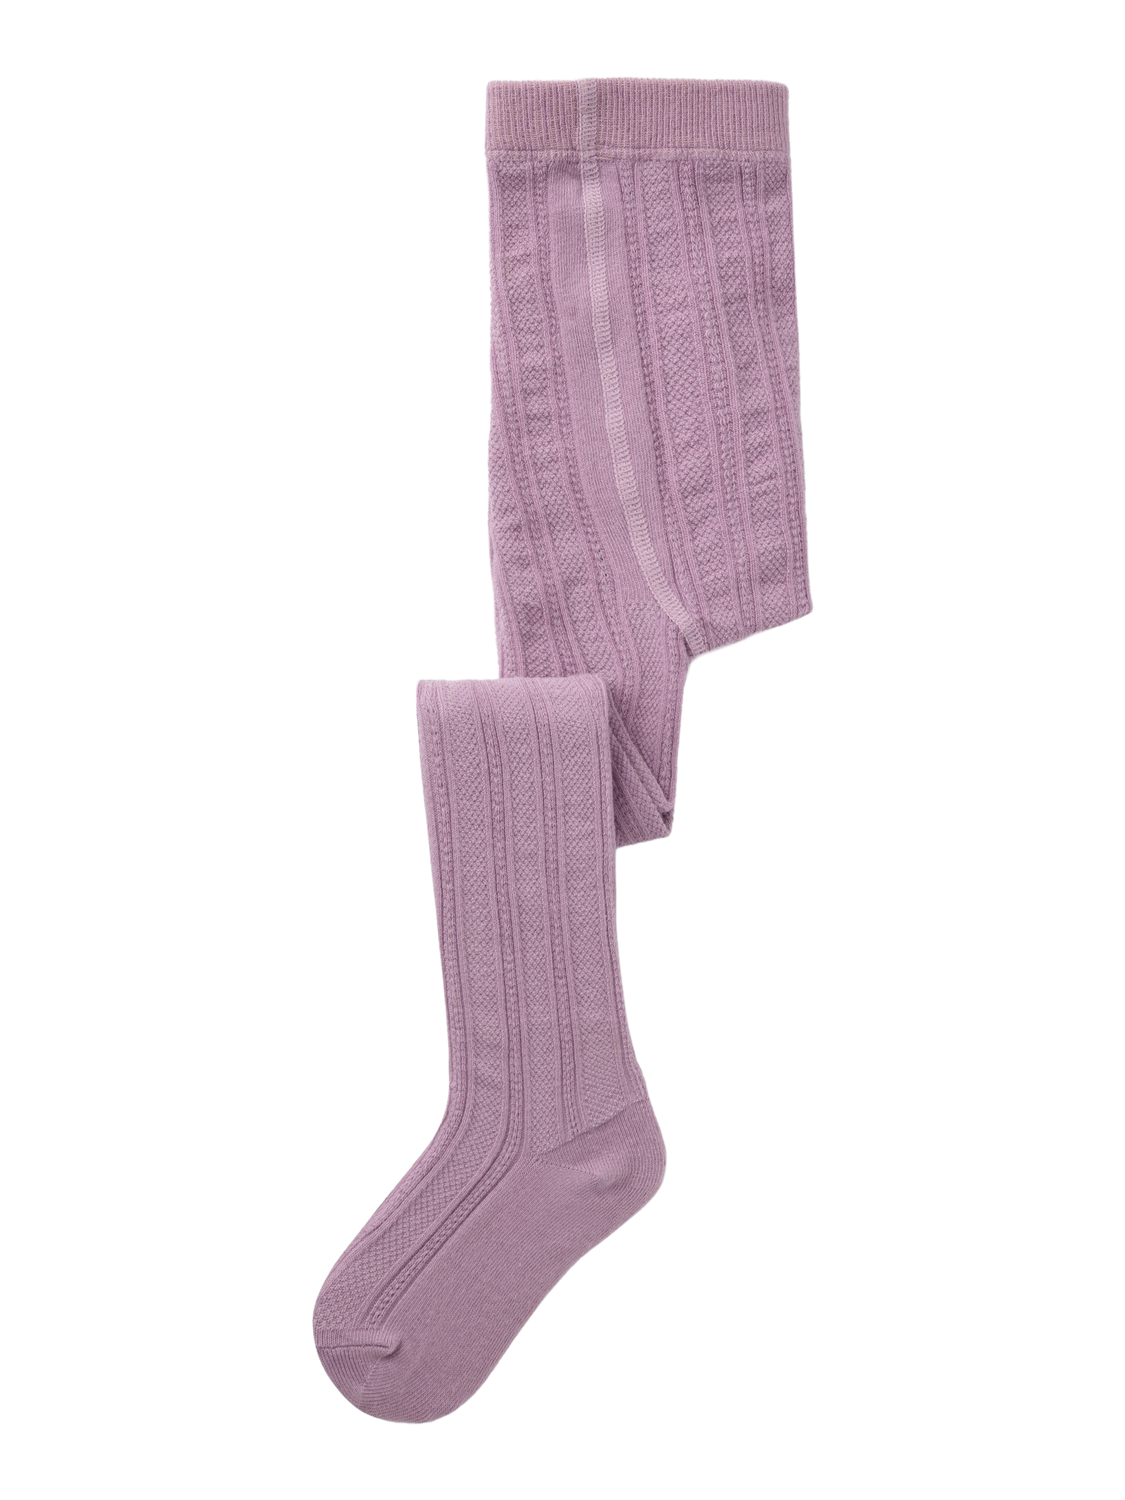 NMFROSE Socks - Lavender Mist